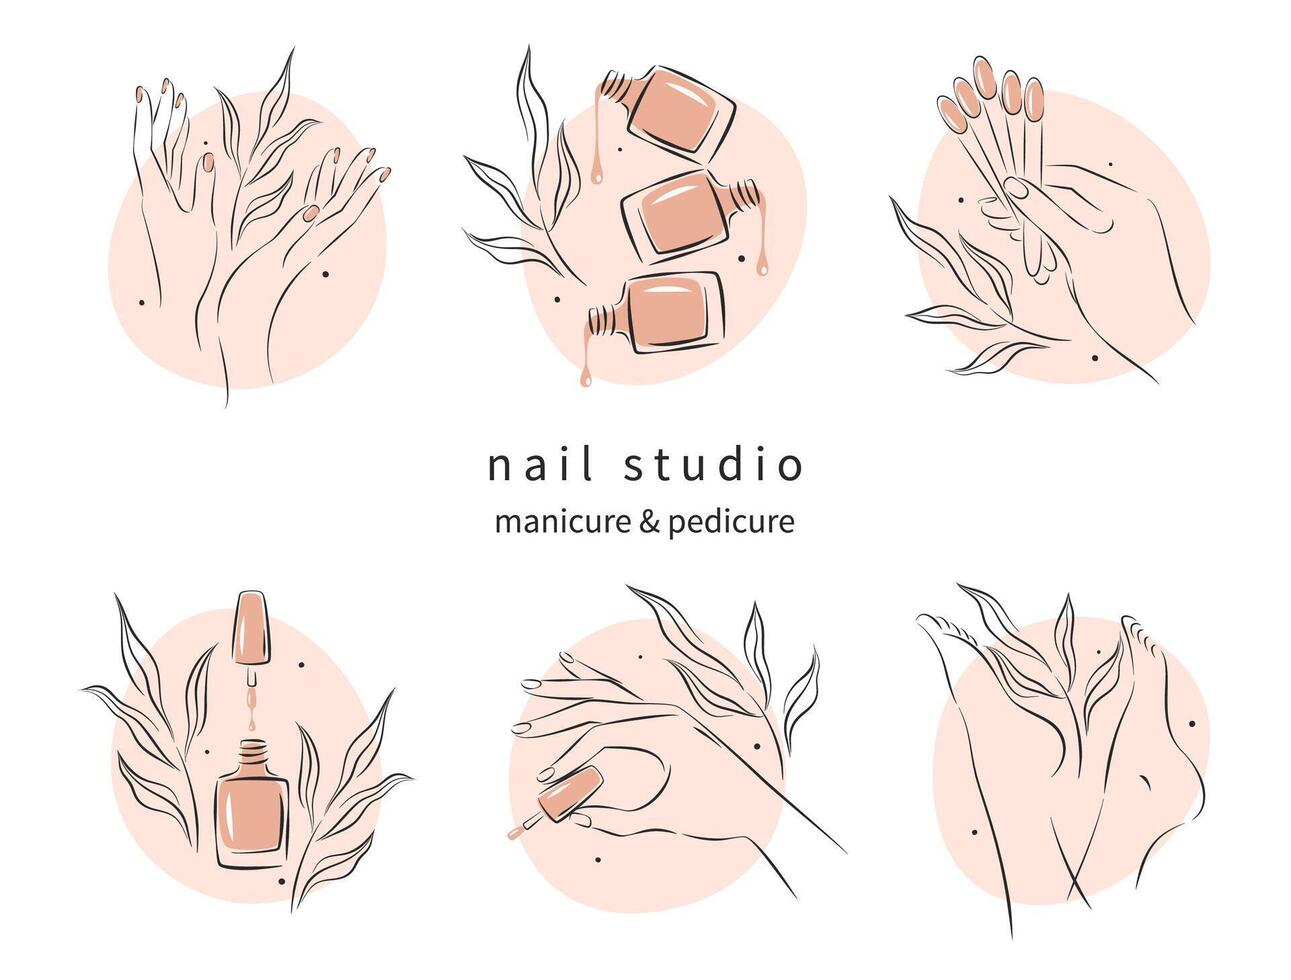 ensemble d'éléments et d'icônes pour nail studio. vernis à ongles, brosse à ongles, mains et jambes féminines manucurées. illustrations vectorielles vecteur